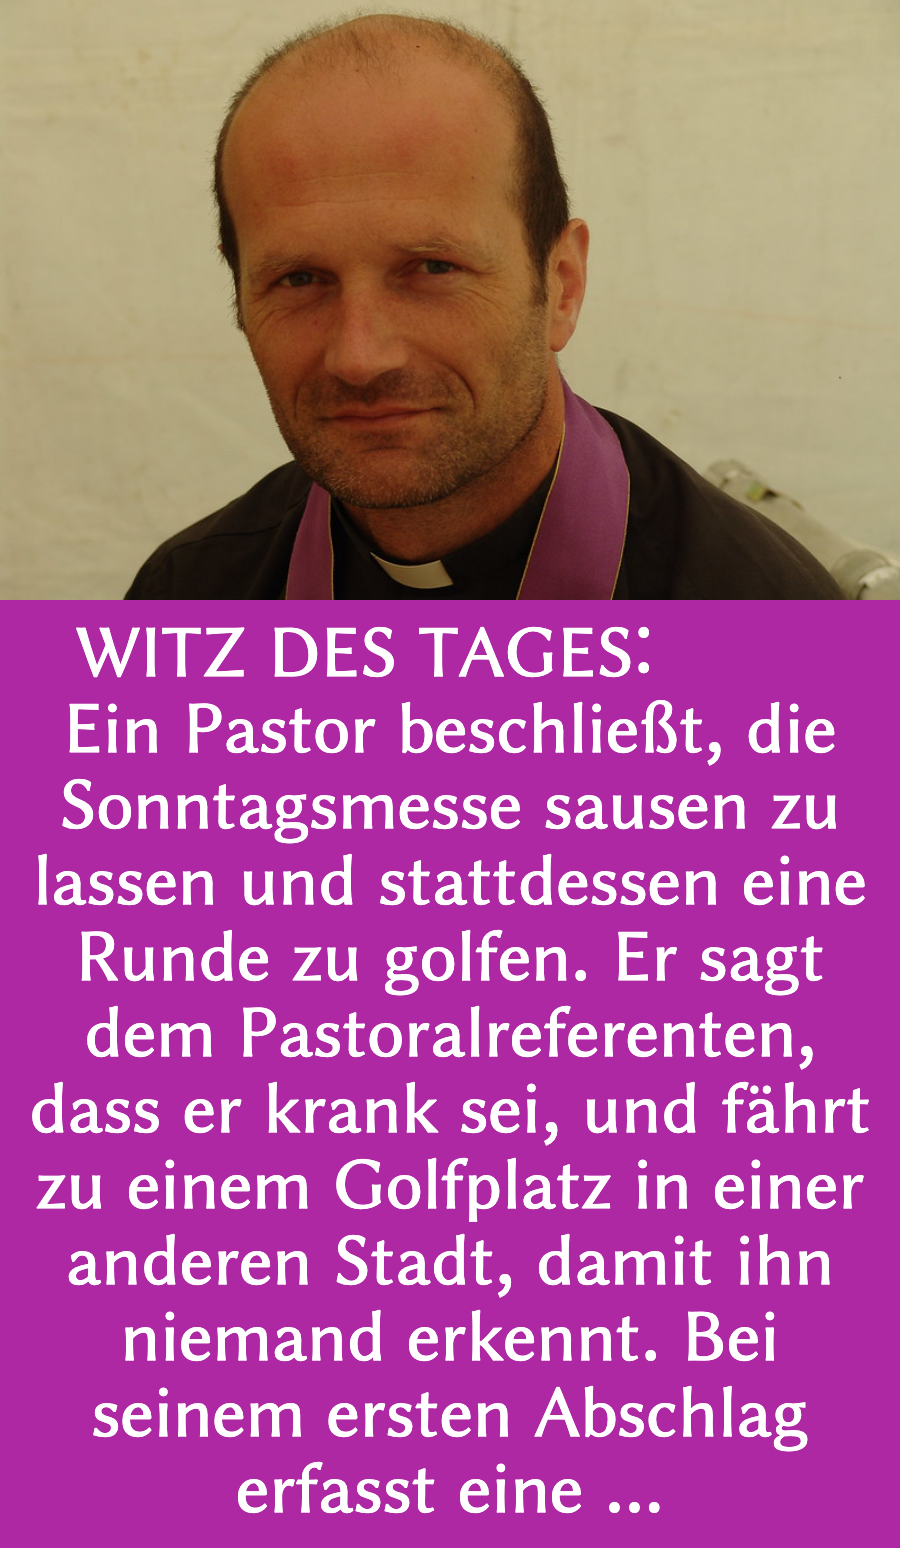 Kirchenwitz: Pastor schwänzt Messe für Golf